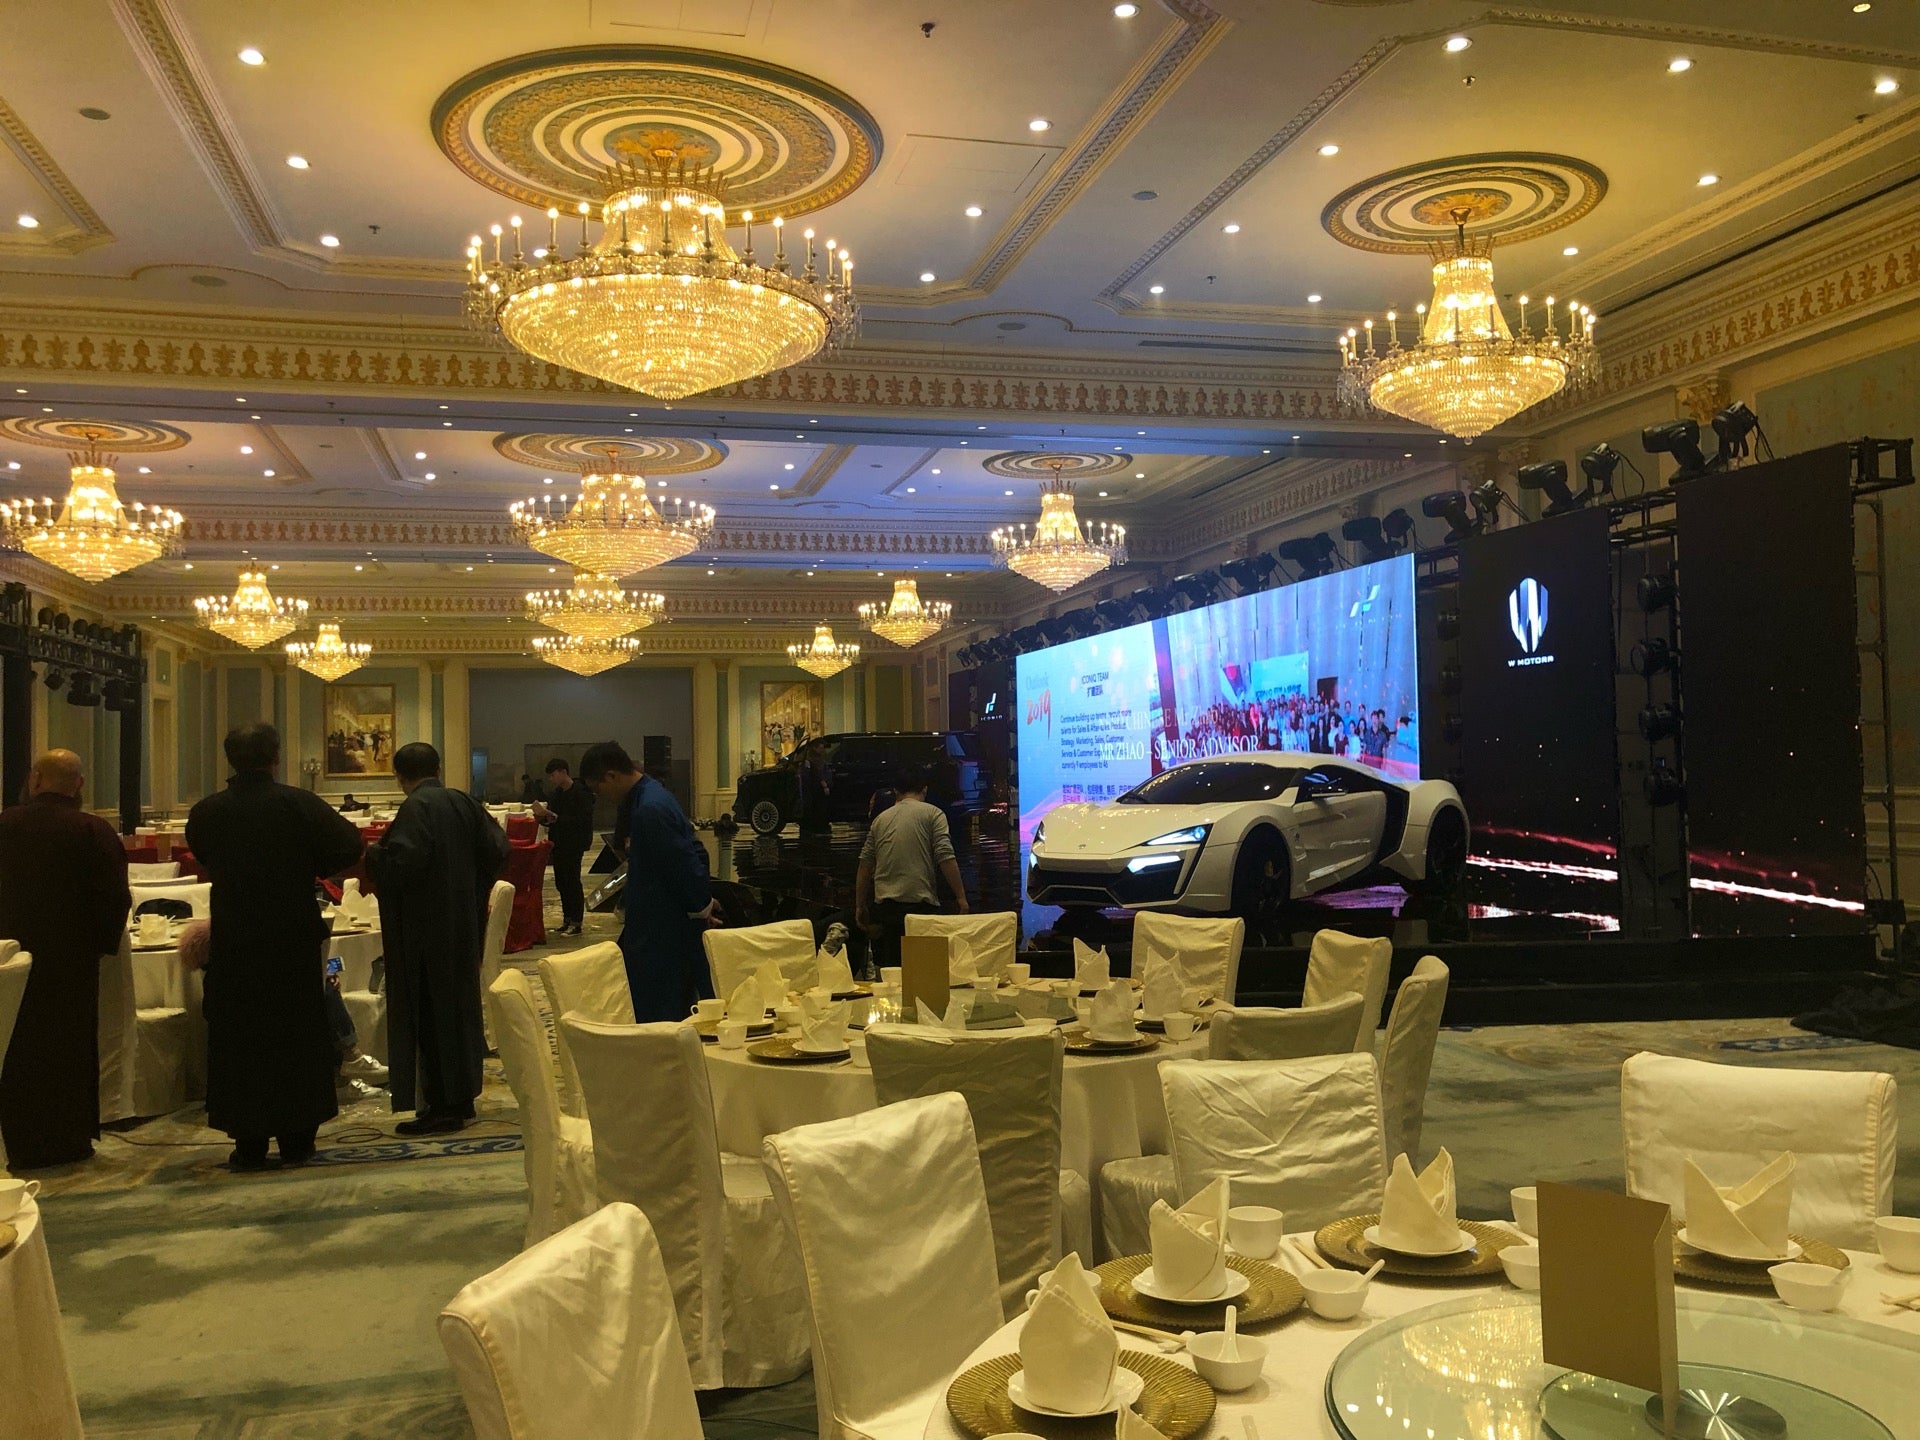 The Ritz-Carlton, Tianjin (天津丽思卡尔顿酒店)